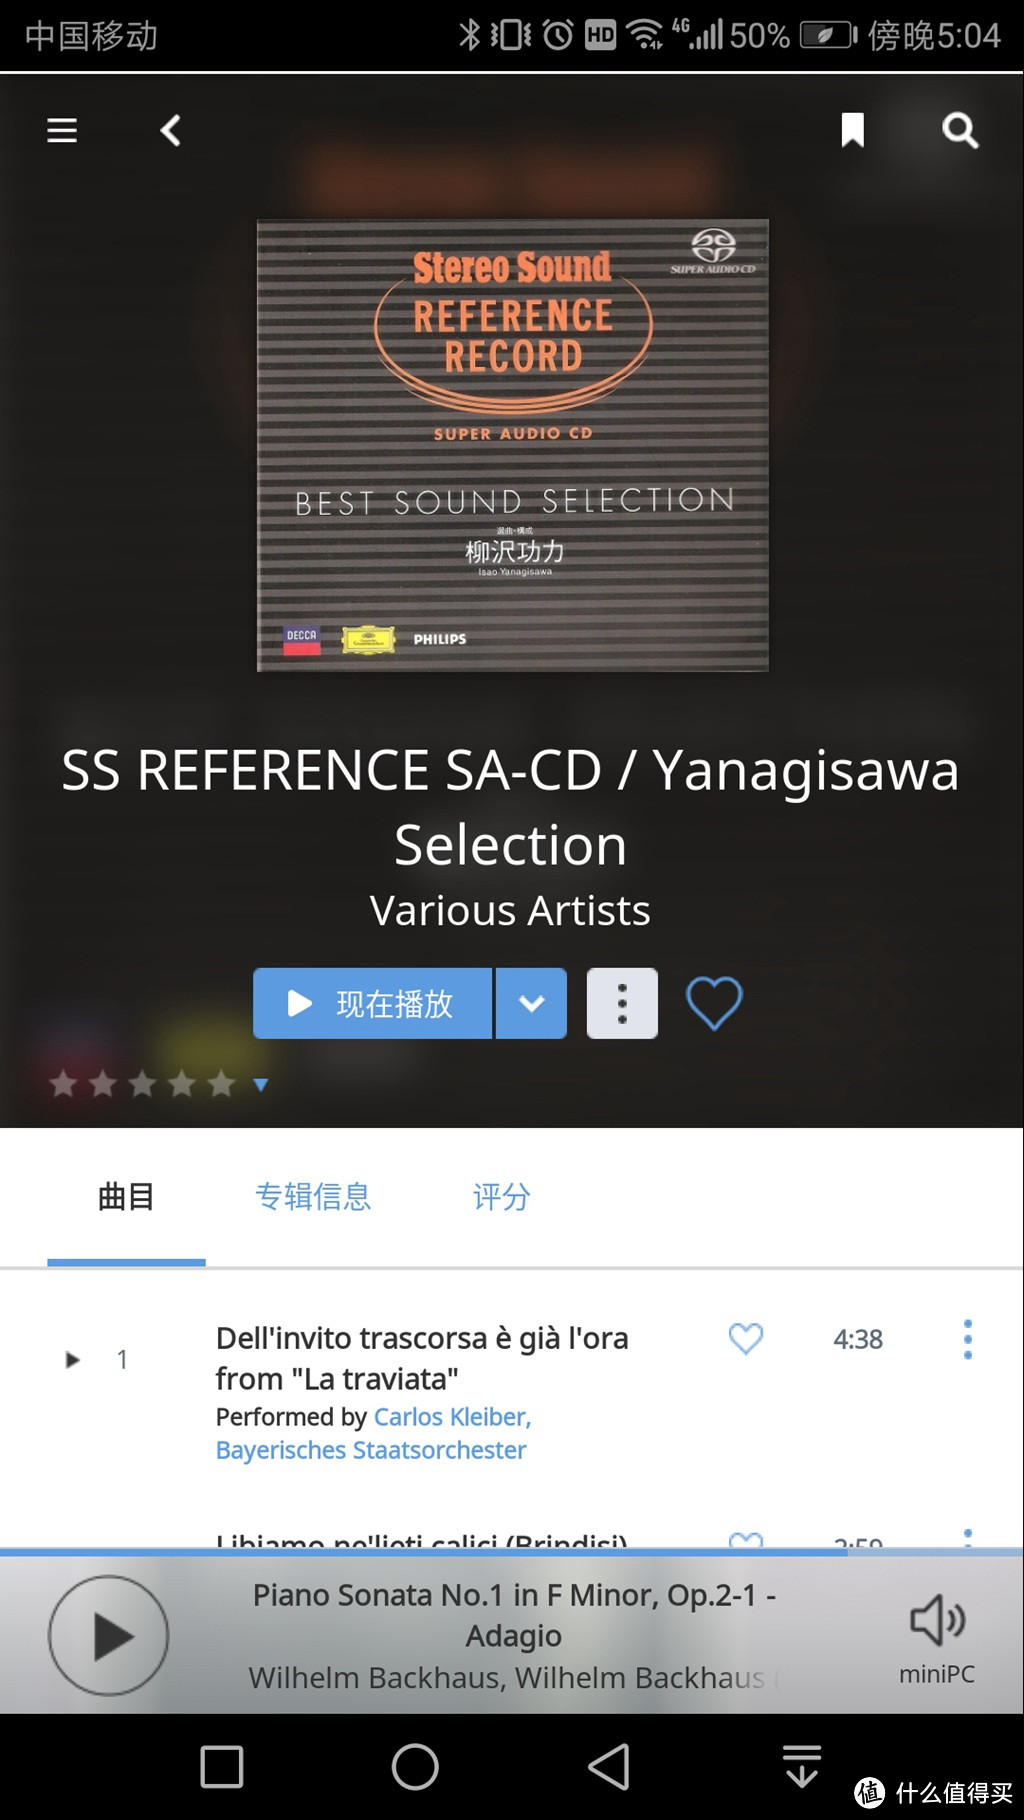 试听曲目是日本立体声唱片出的SACD试音碟，古典音乐曲目，各种类型都有！